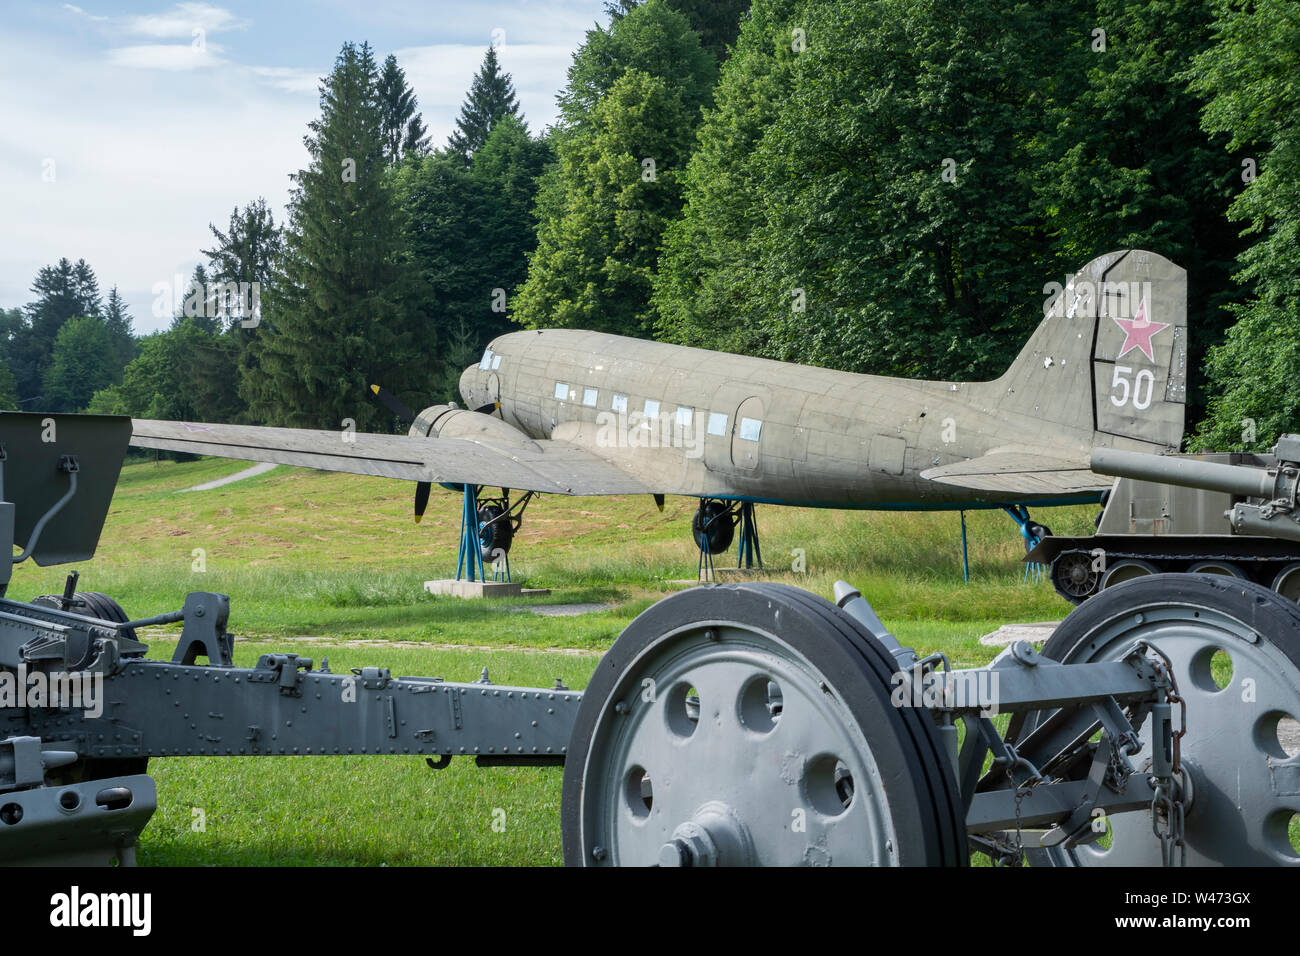 Musée militaire et historique en plein air à Svidnik. - Lisunov Li-2 (version russe du Dakota américain DC-3/C-47). Slovaquie, Europe Banque D'Images